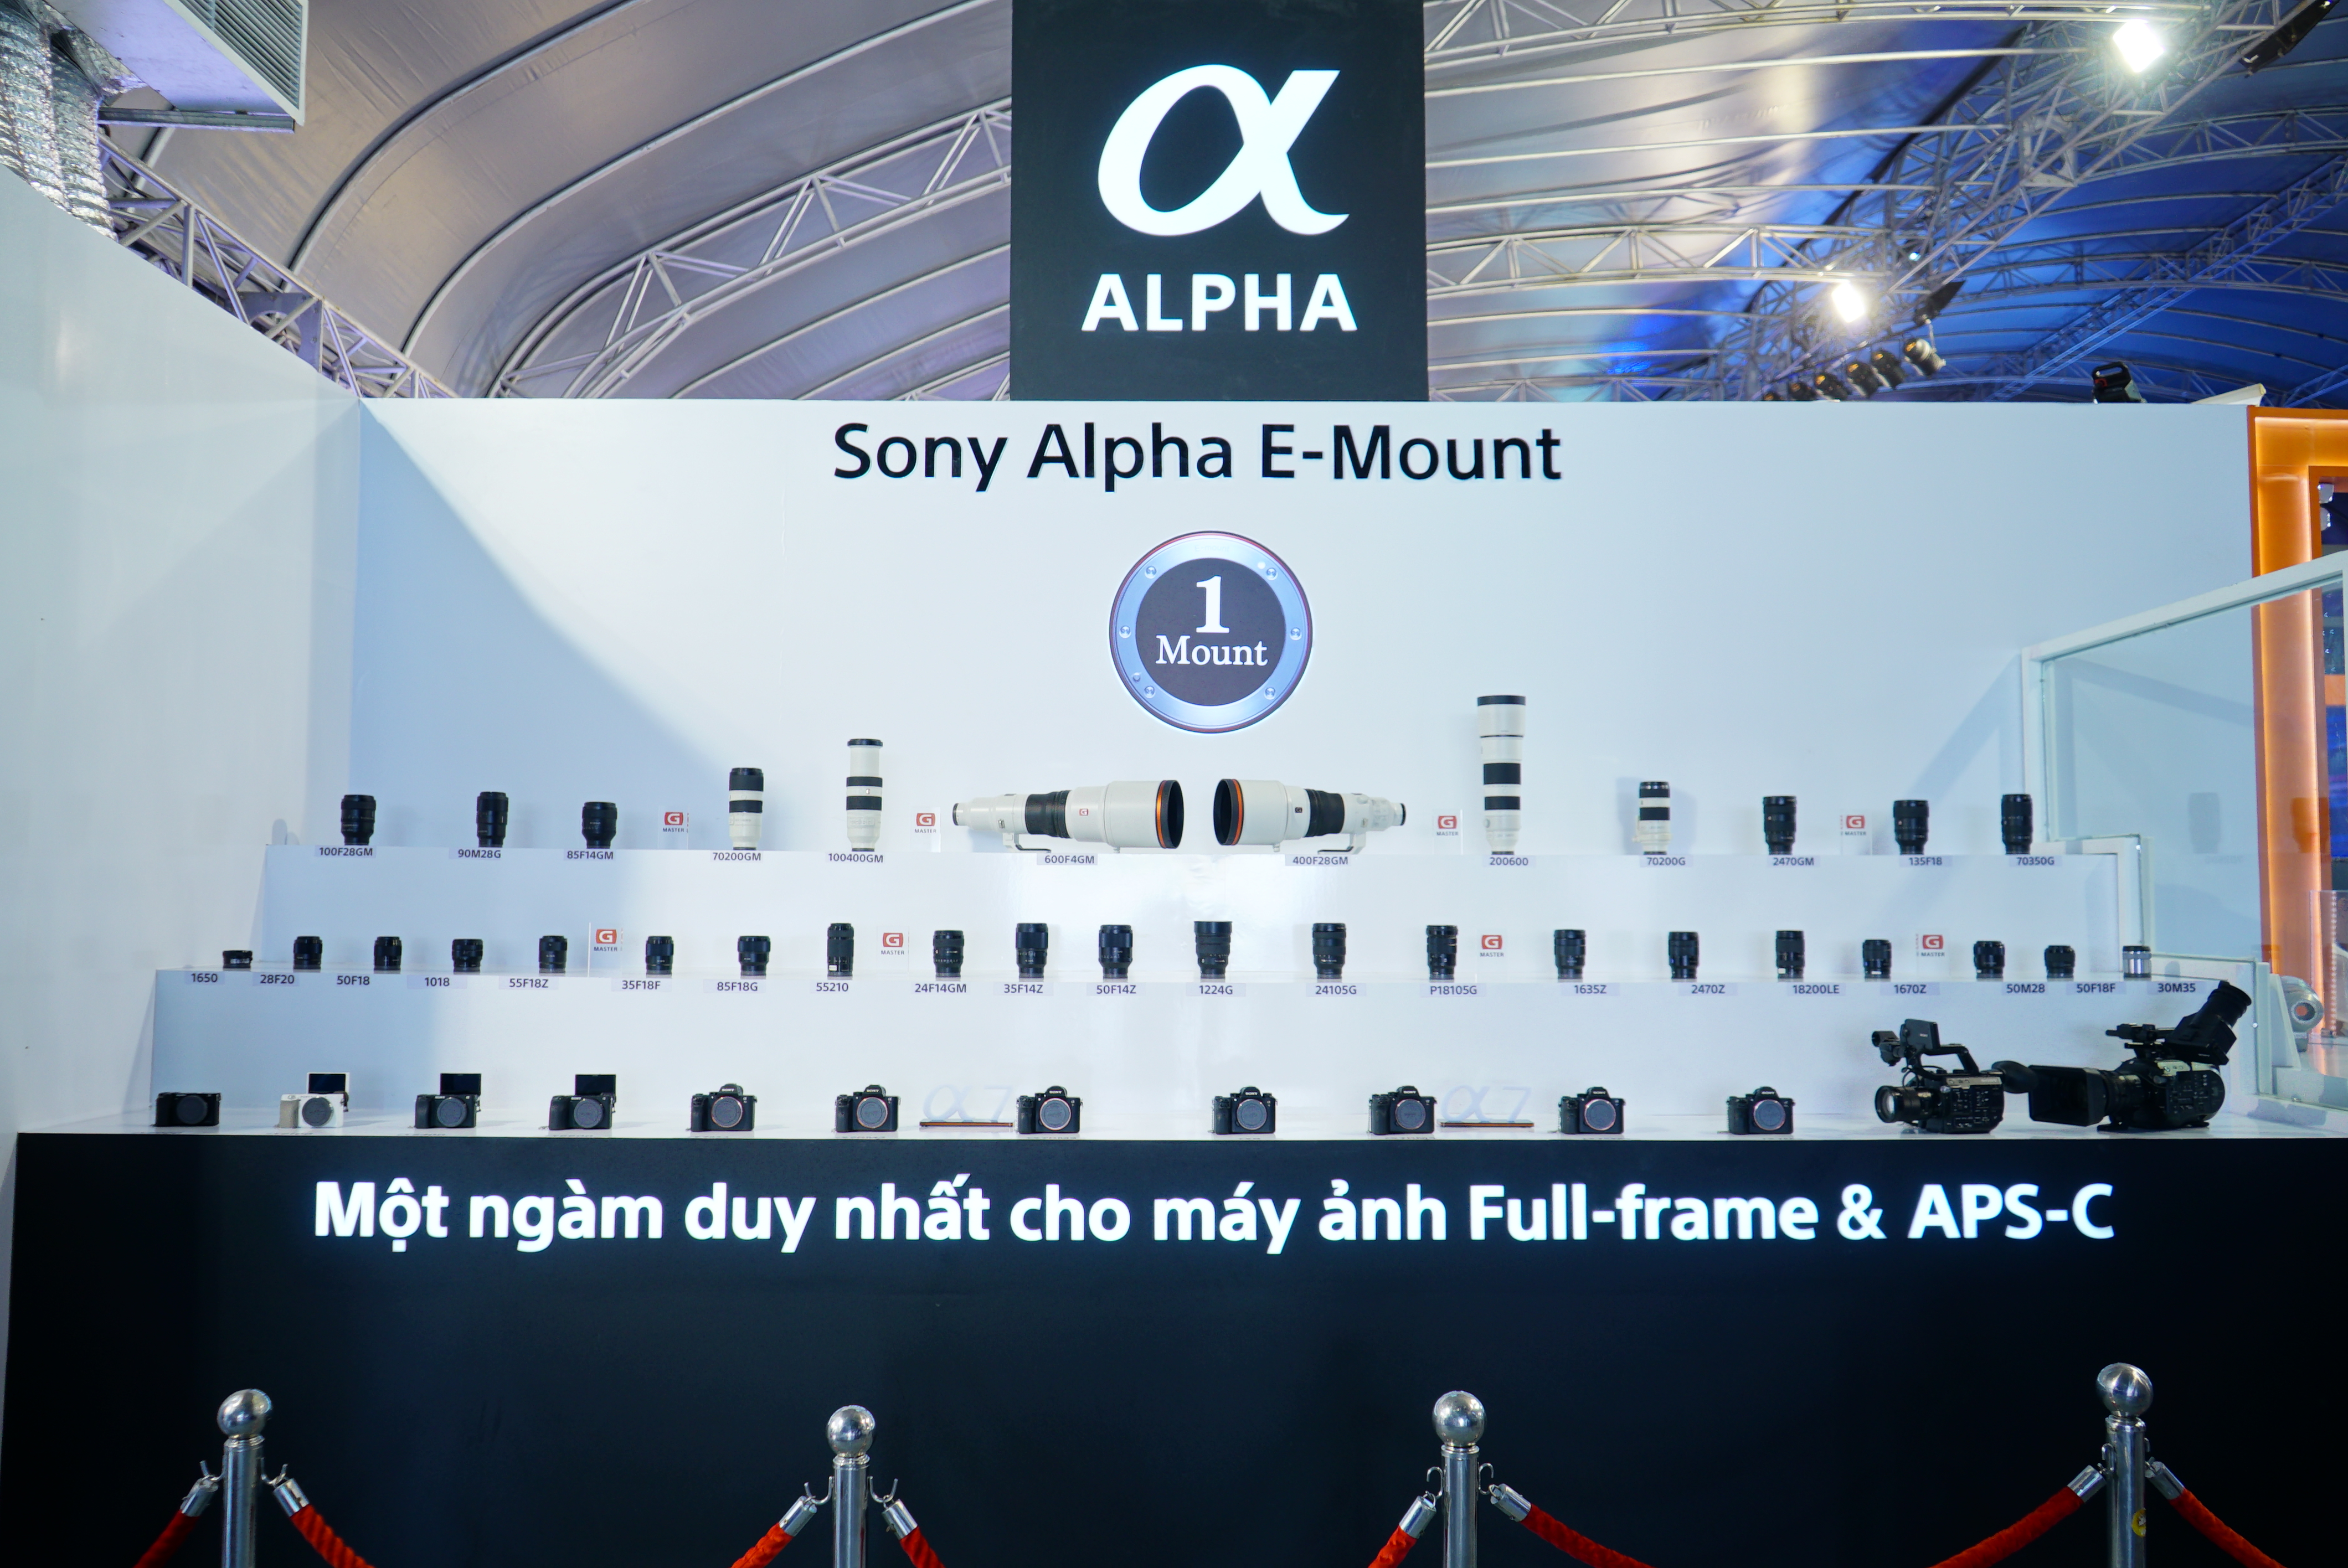 Thế hệ máy ảnh và ống kính Sony Alpha được trưng bày